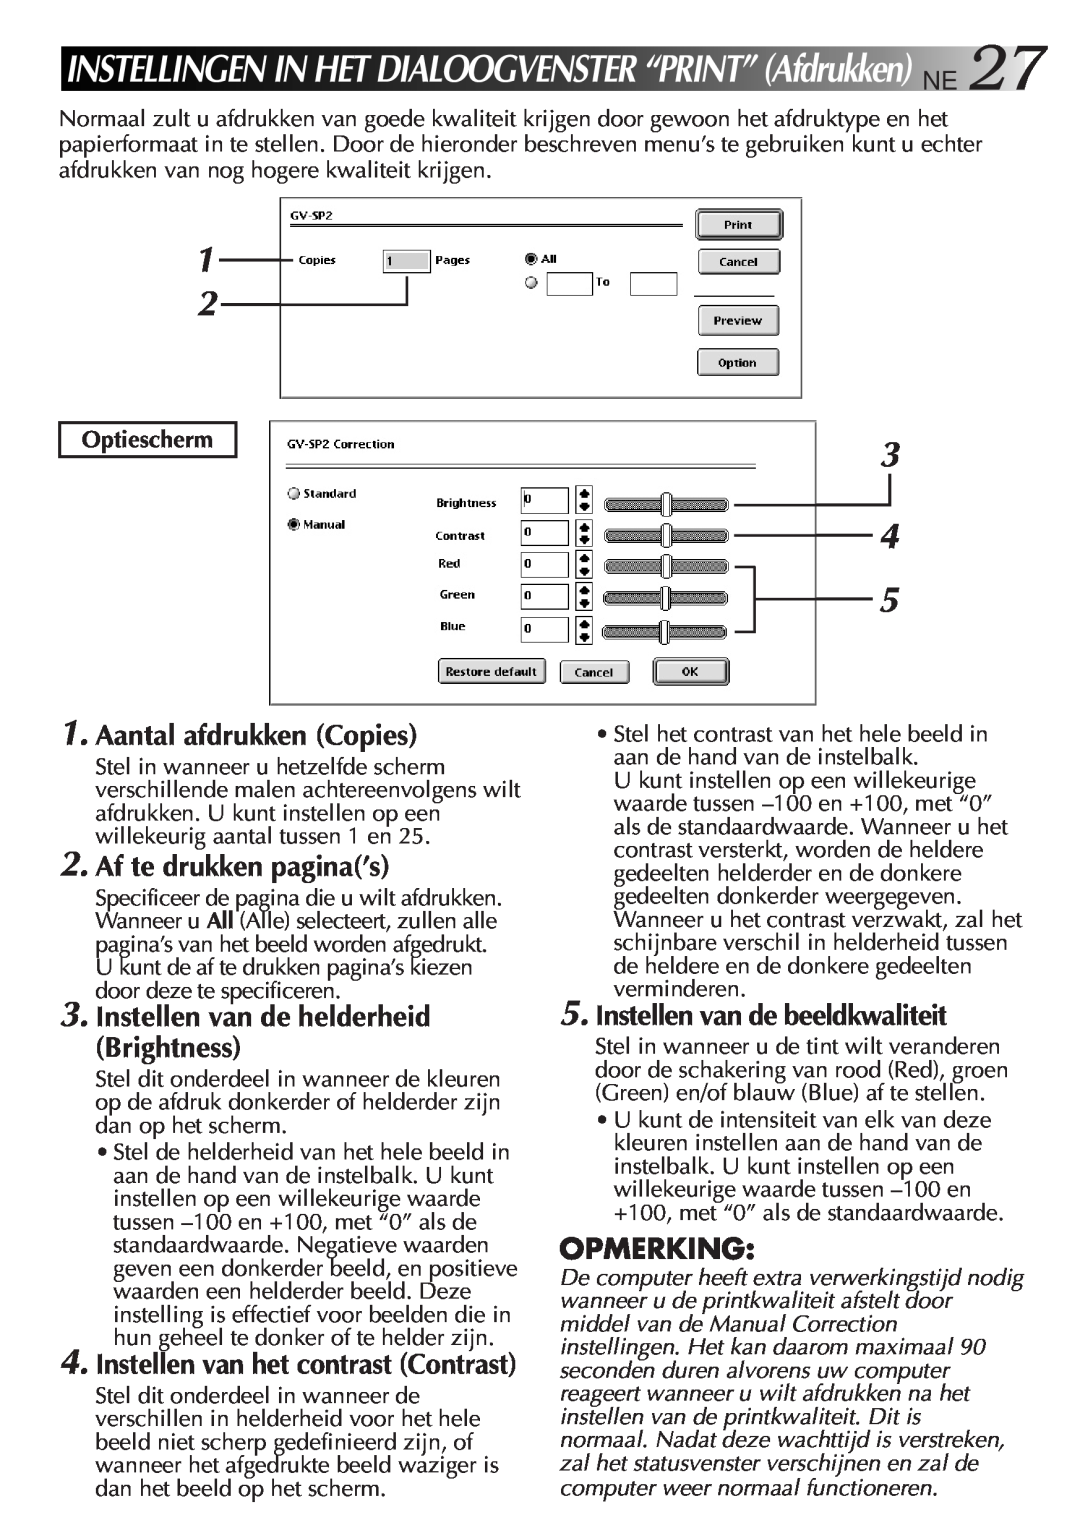 JVC GV-SP2 manual Aantal afdrukken Copies, Af te drukken pagina’s, Instellen van de helderheid Brightness, Opmerking 